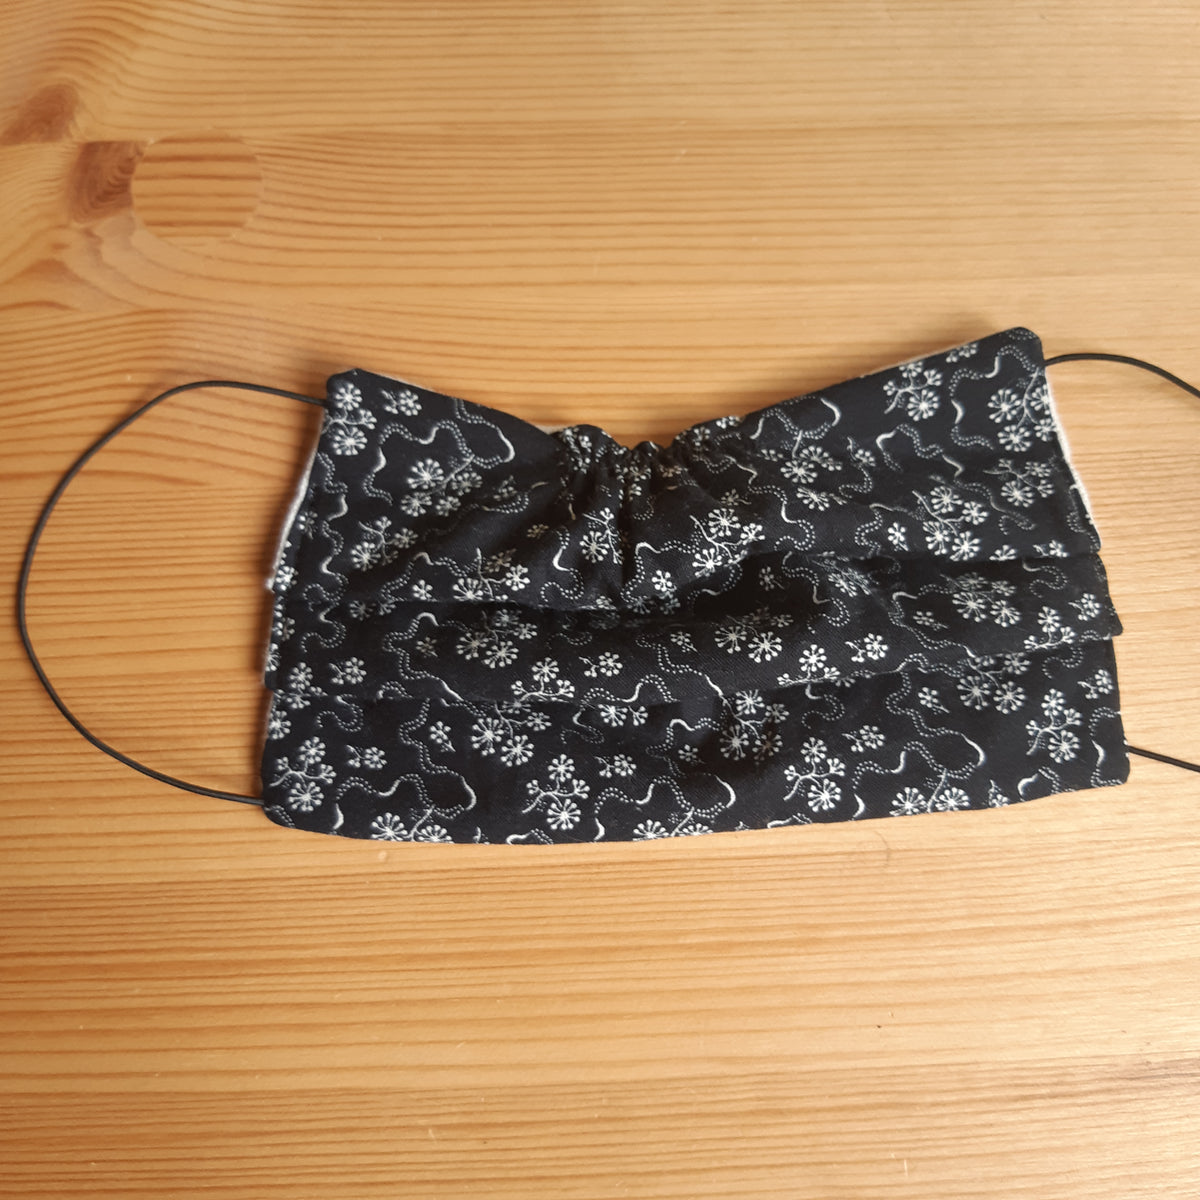 masque protection coton elastique 2 plis fabrication artisanale france  fleurs fond noir